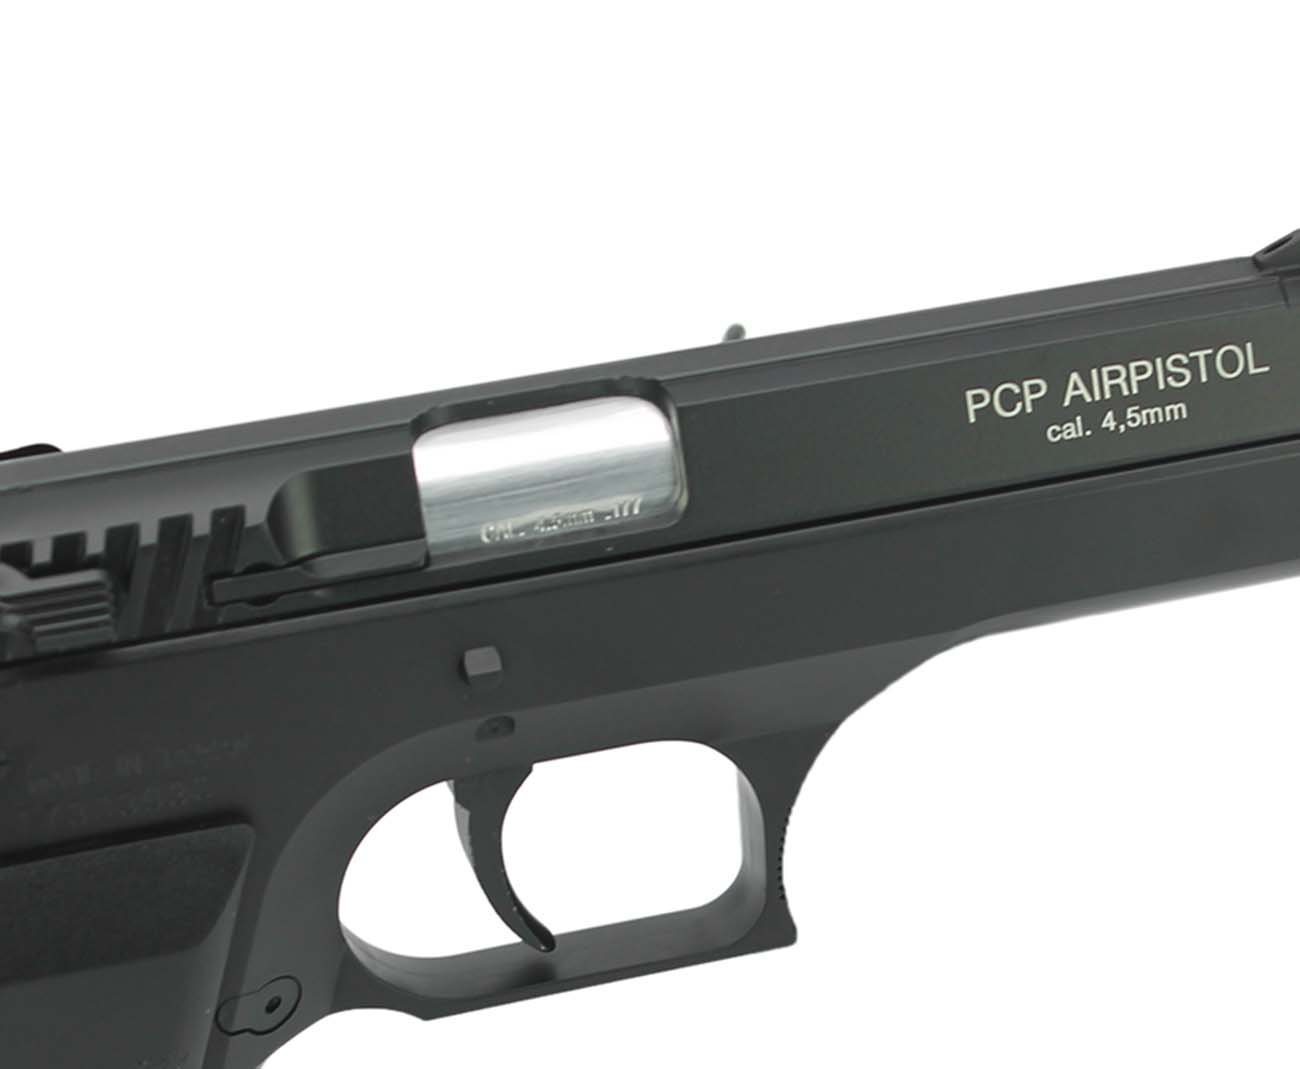 Pistola De Pressão Pcp Kwc P45 Cal 4,5mm Full Metal - Rossi